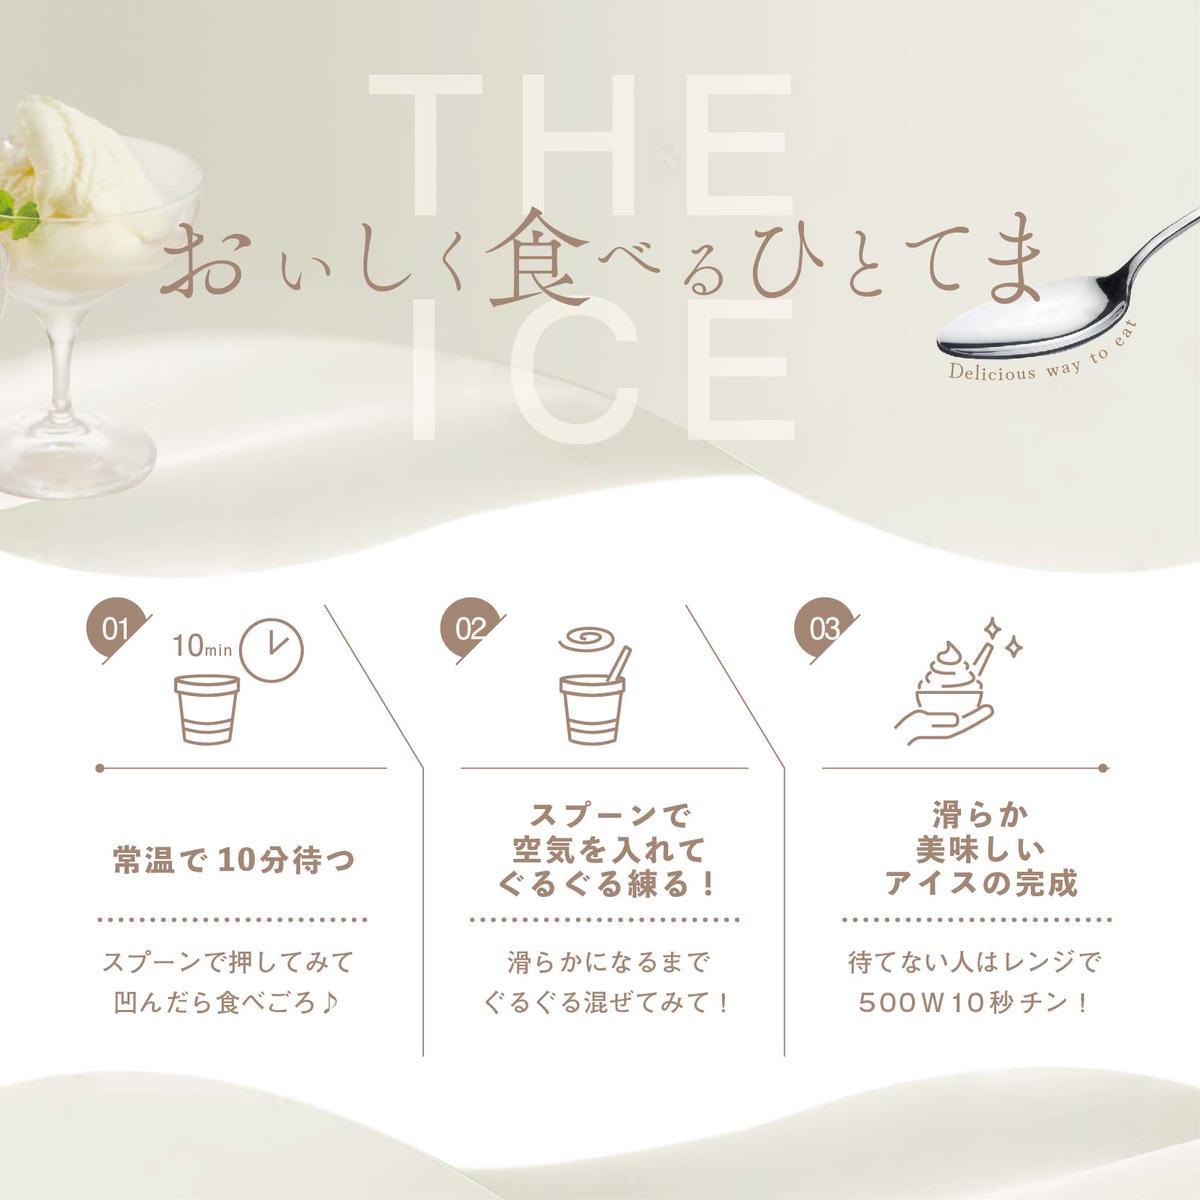 【毎月2回定期便】【THE ICE】5種食べ比べ 5個セット【CJM020206】